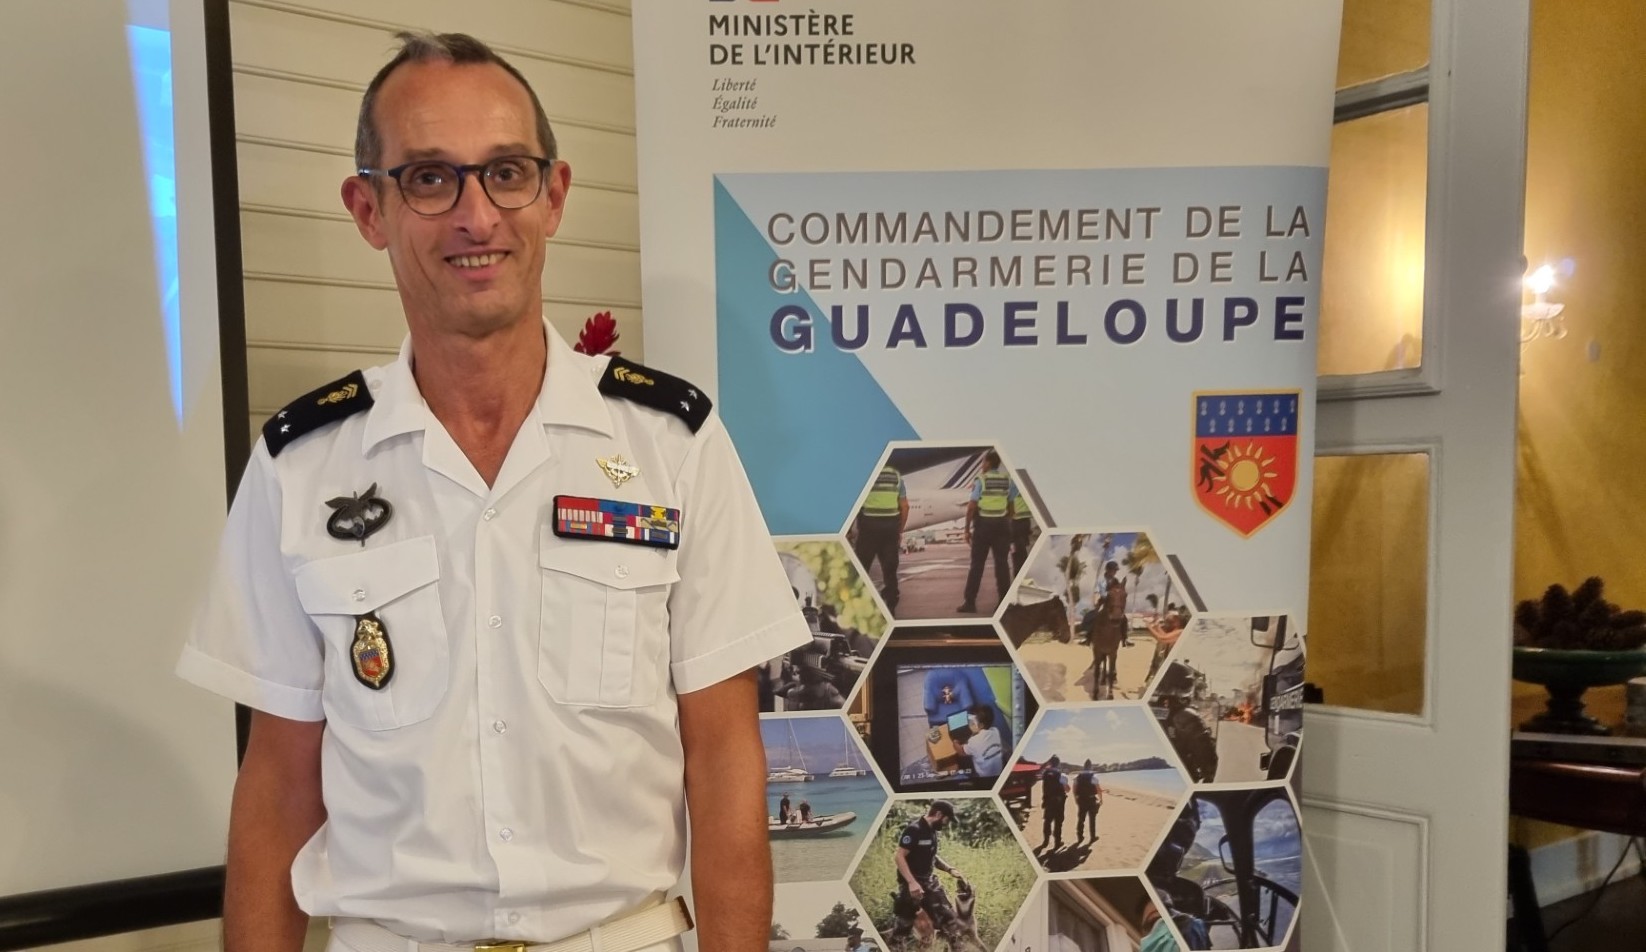     Le général Vincent Lamballe, commandant de la gendarmerie de Guadeloupe, sur le départ

